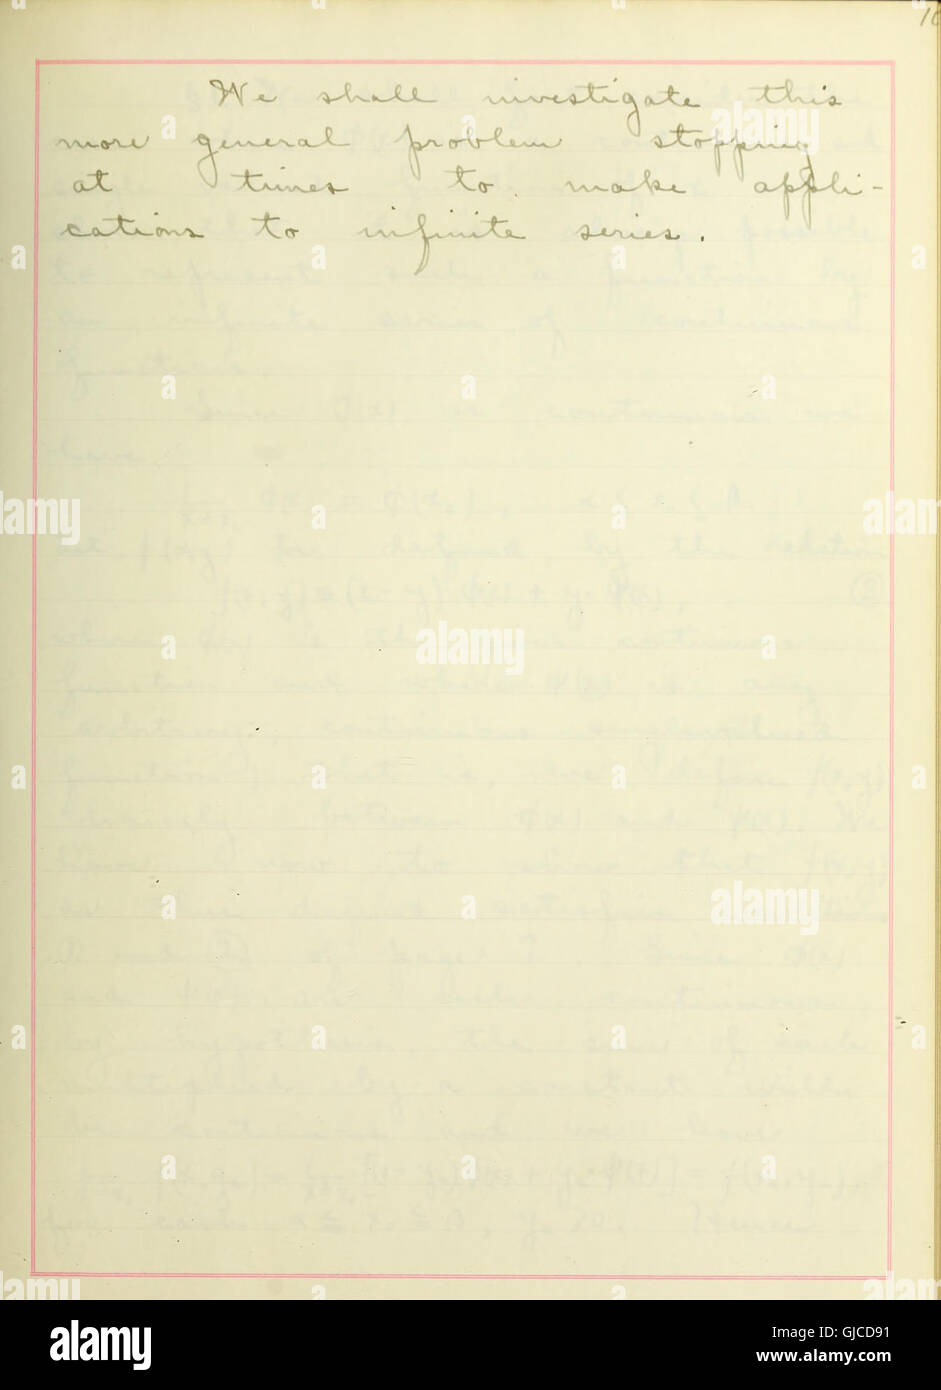 Condizioni alle quali tali funzioni possono essere rappresentate dalla serie infinita (1904) Foto Stock